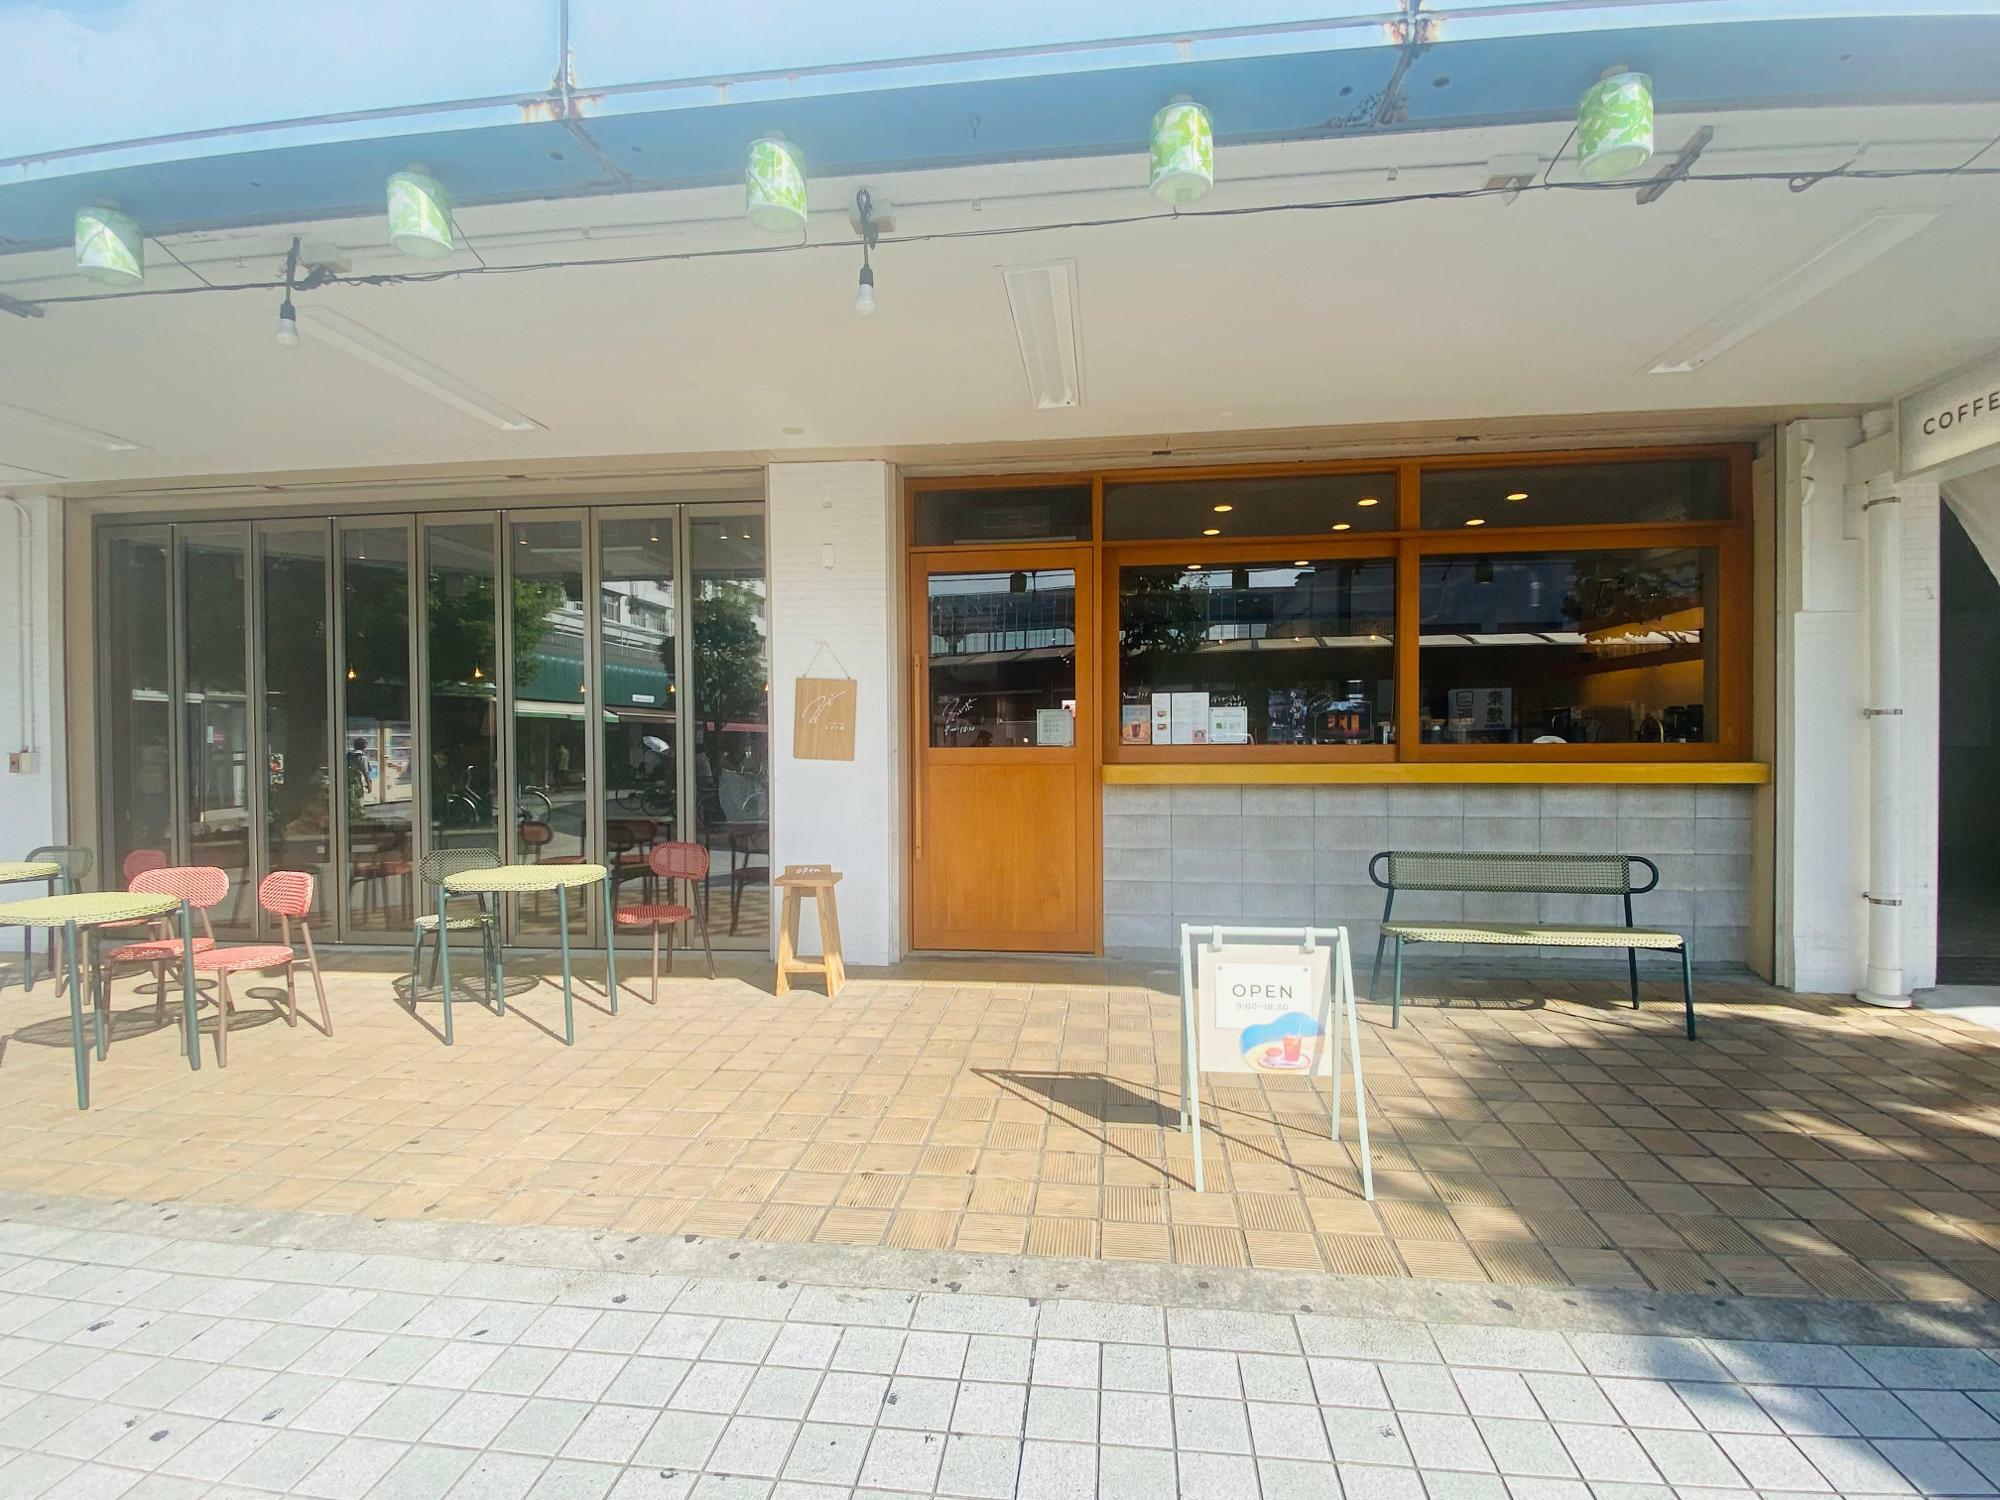 竹ノ塚駅すぐ近くにあるカフェ「ミントポ」